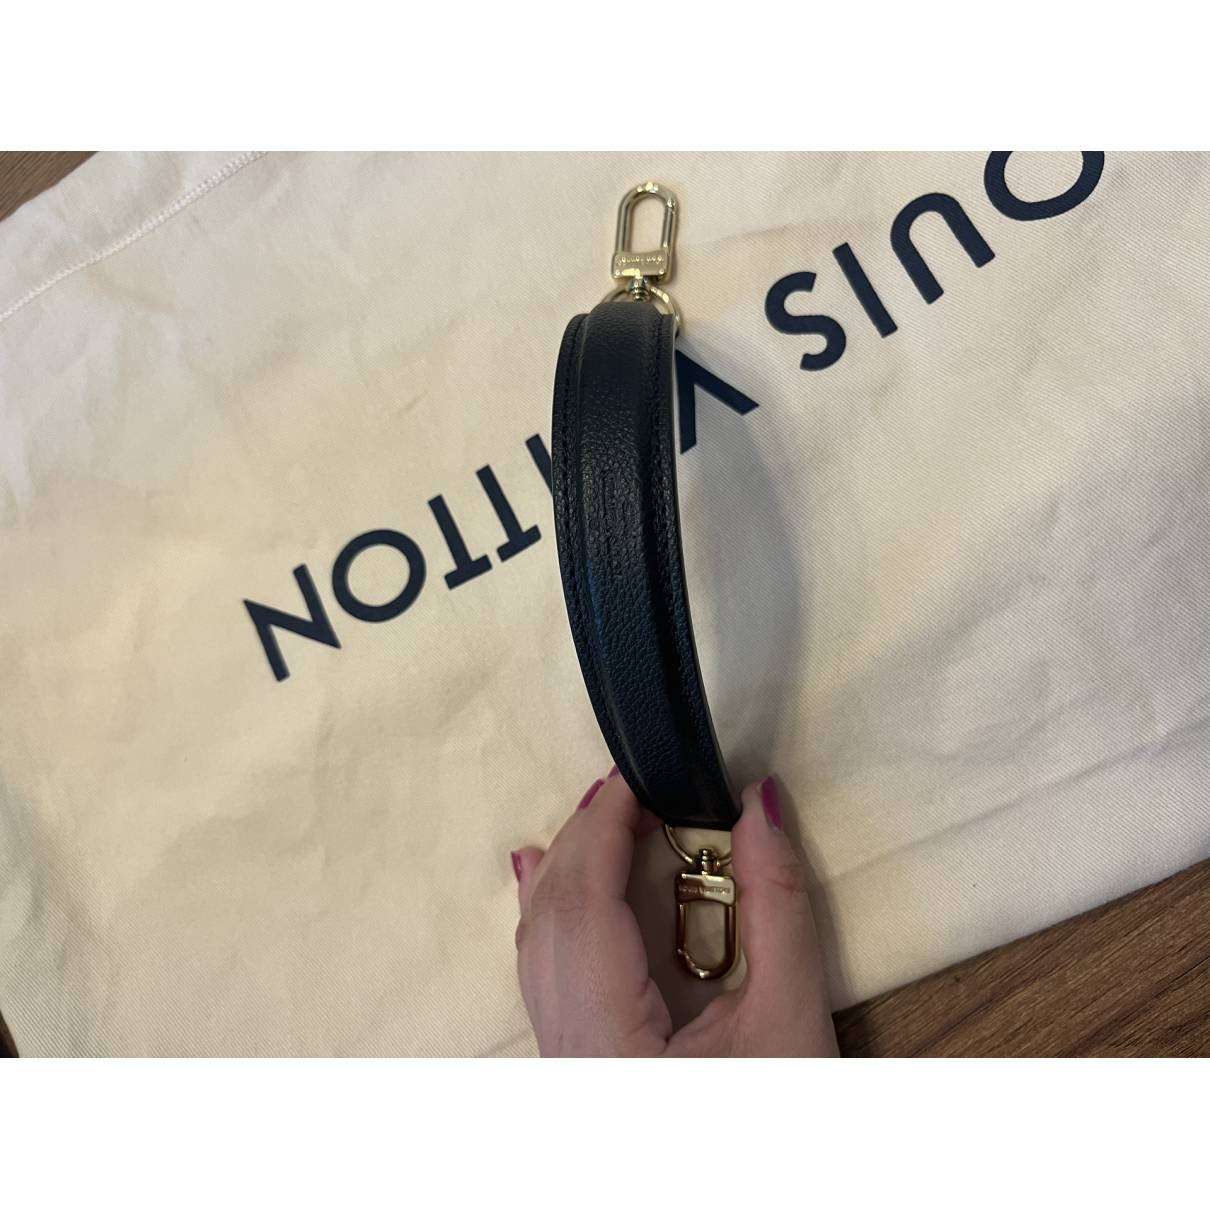 Louis Vuitton - Authenticated Néonoé Handbag - Leather Black Plain for Women, Very Good Condition